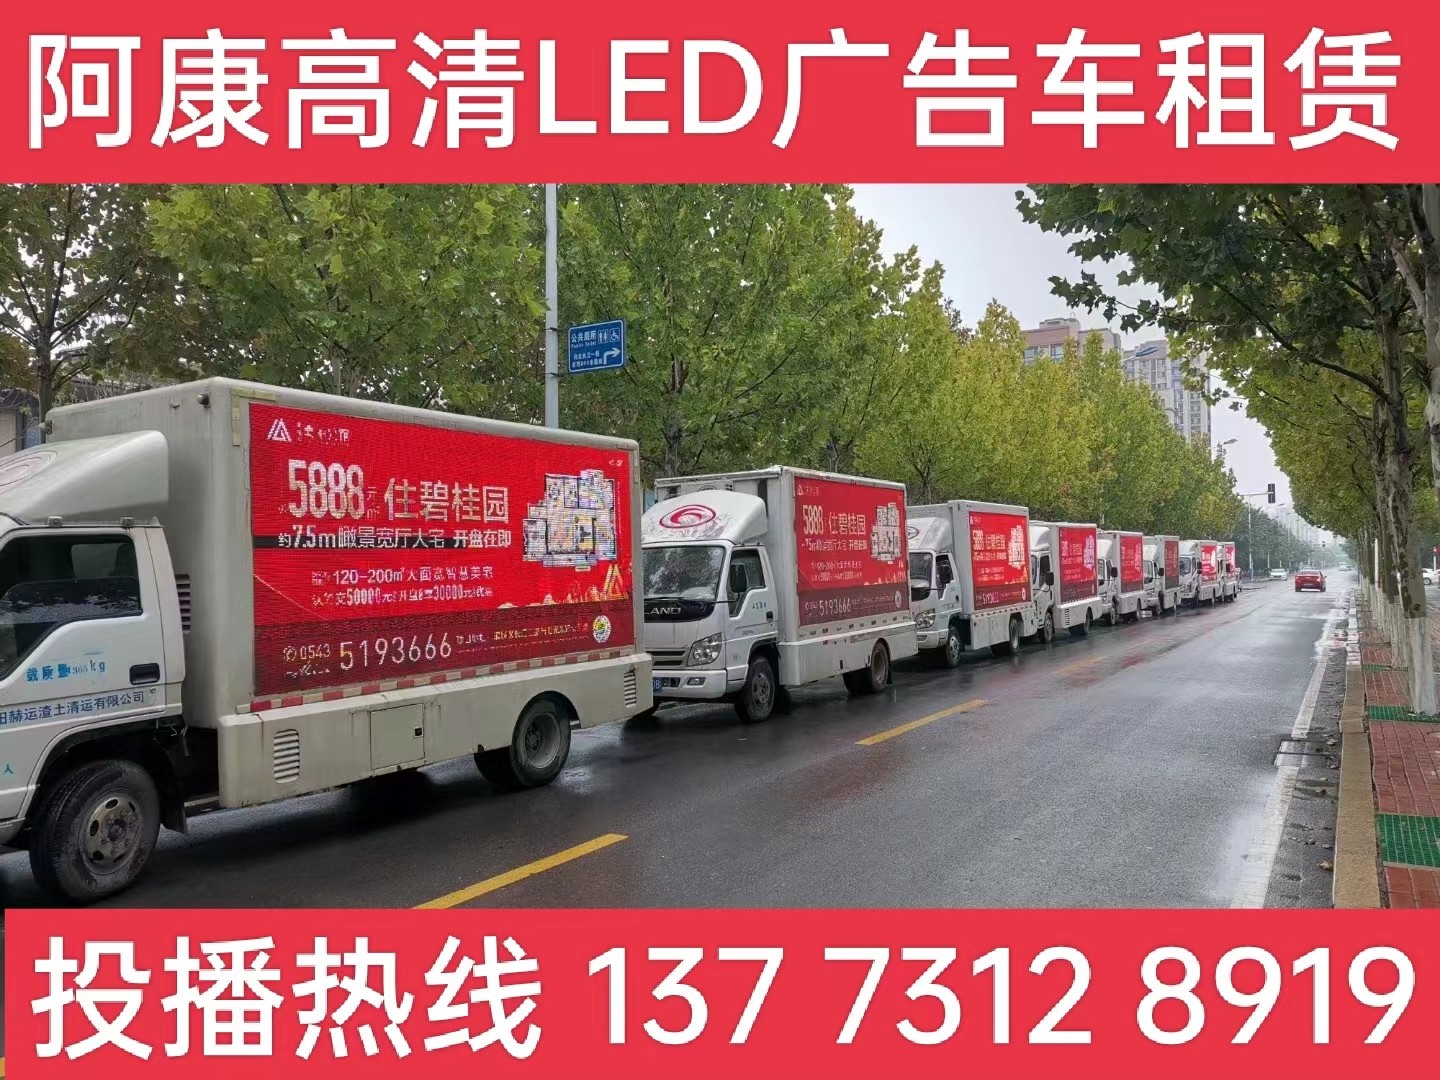 镇江宣传车租赁公司-楼盘LED广告车投放